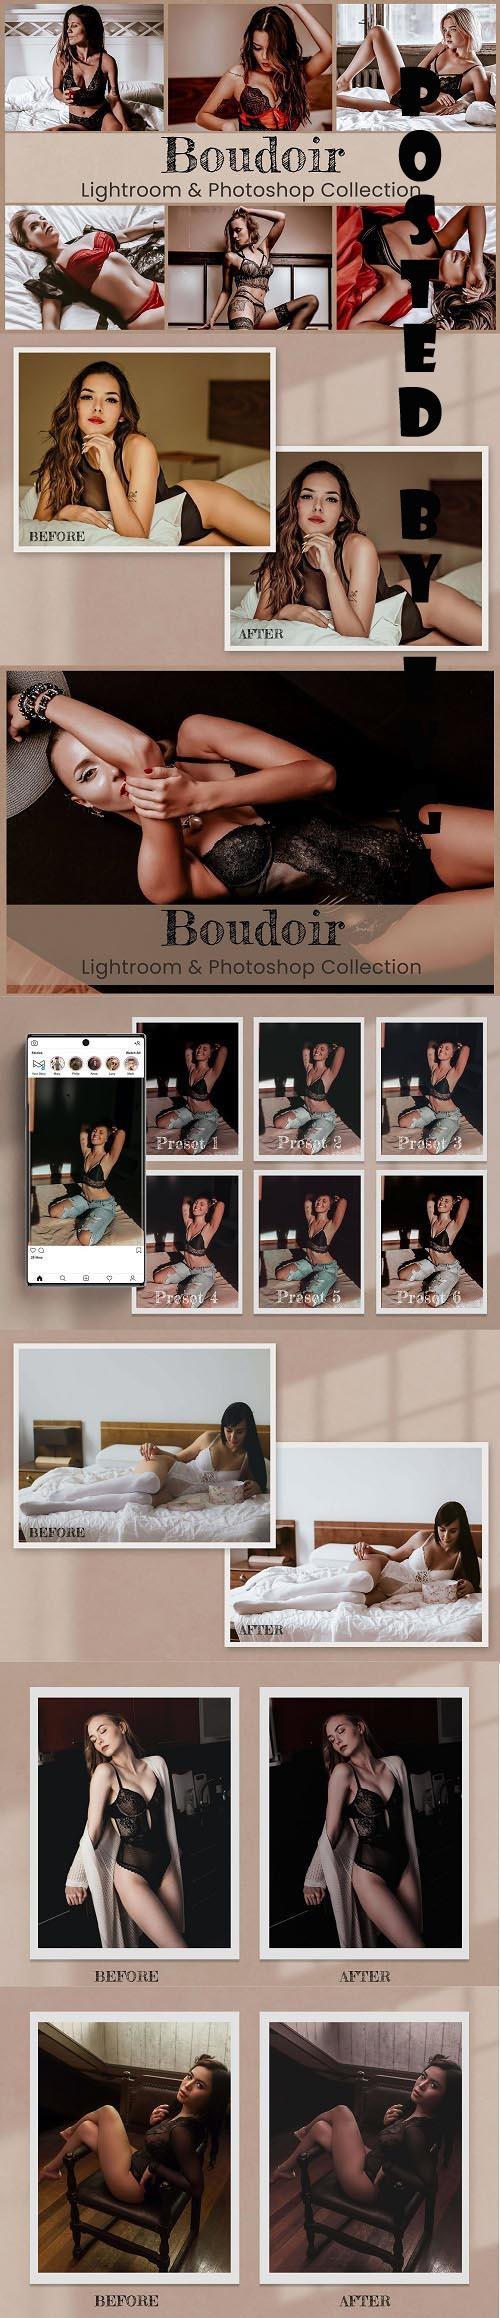 Boudoir Lightroom Photoshop ACR LUTs - 6450218